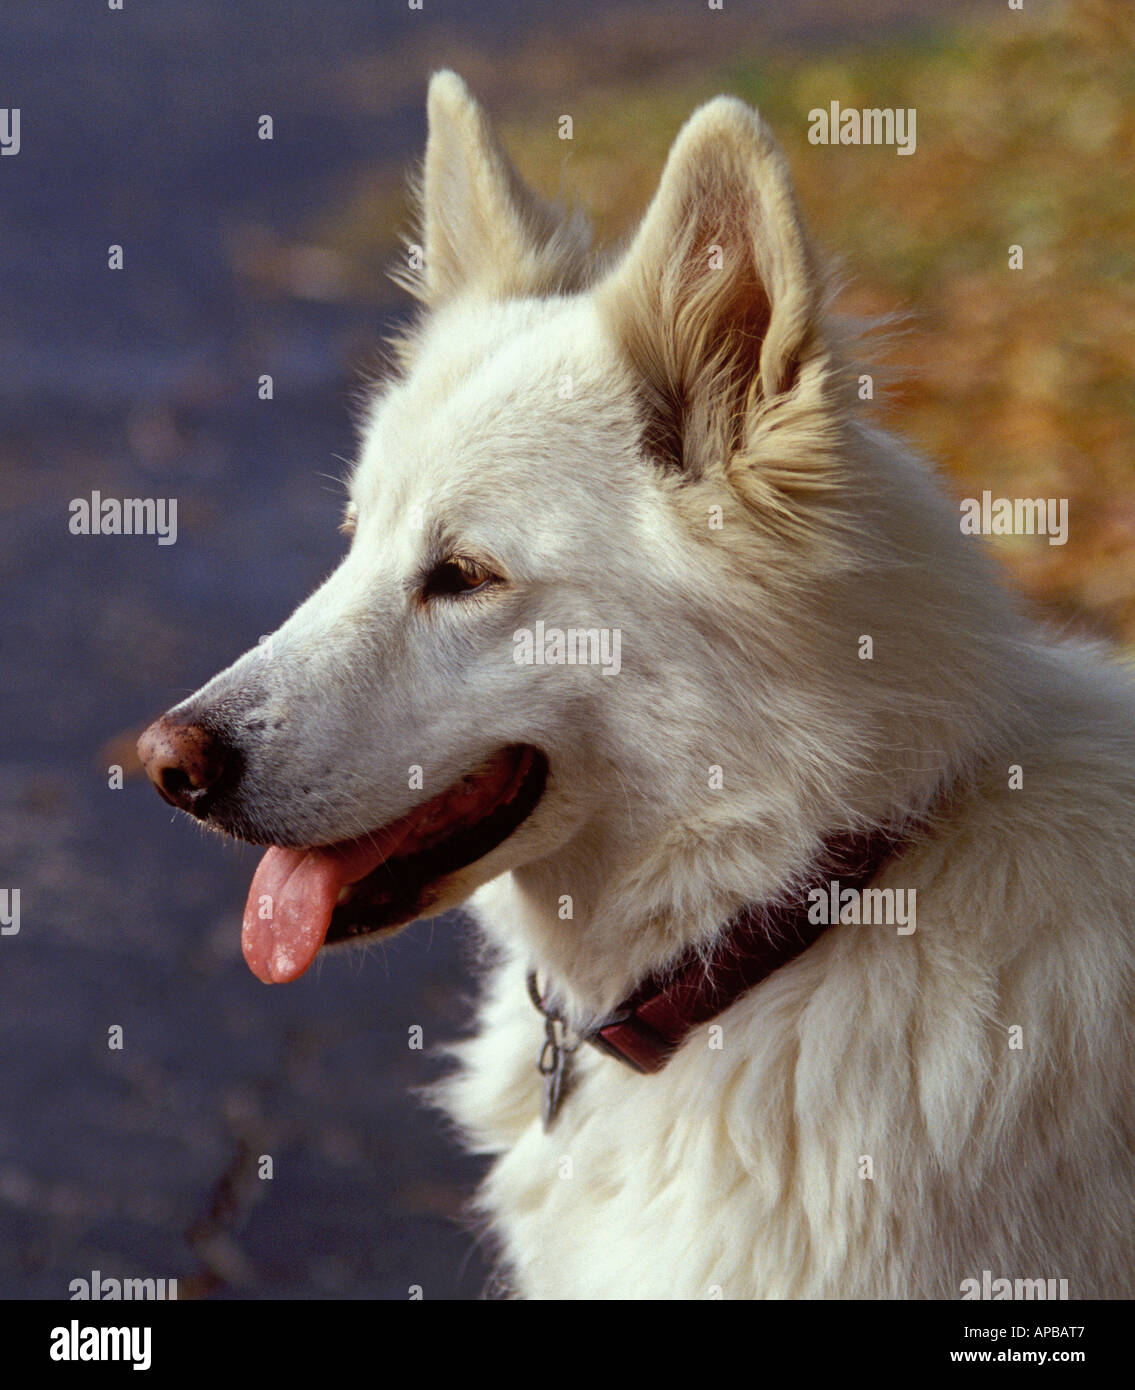 Samojede Shepard Mix Hund Stockfotografie - Alamy